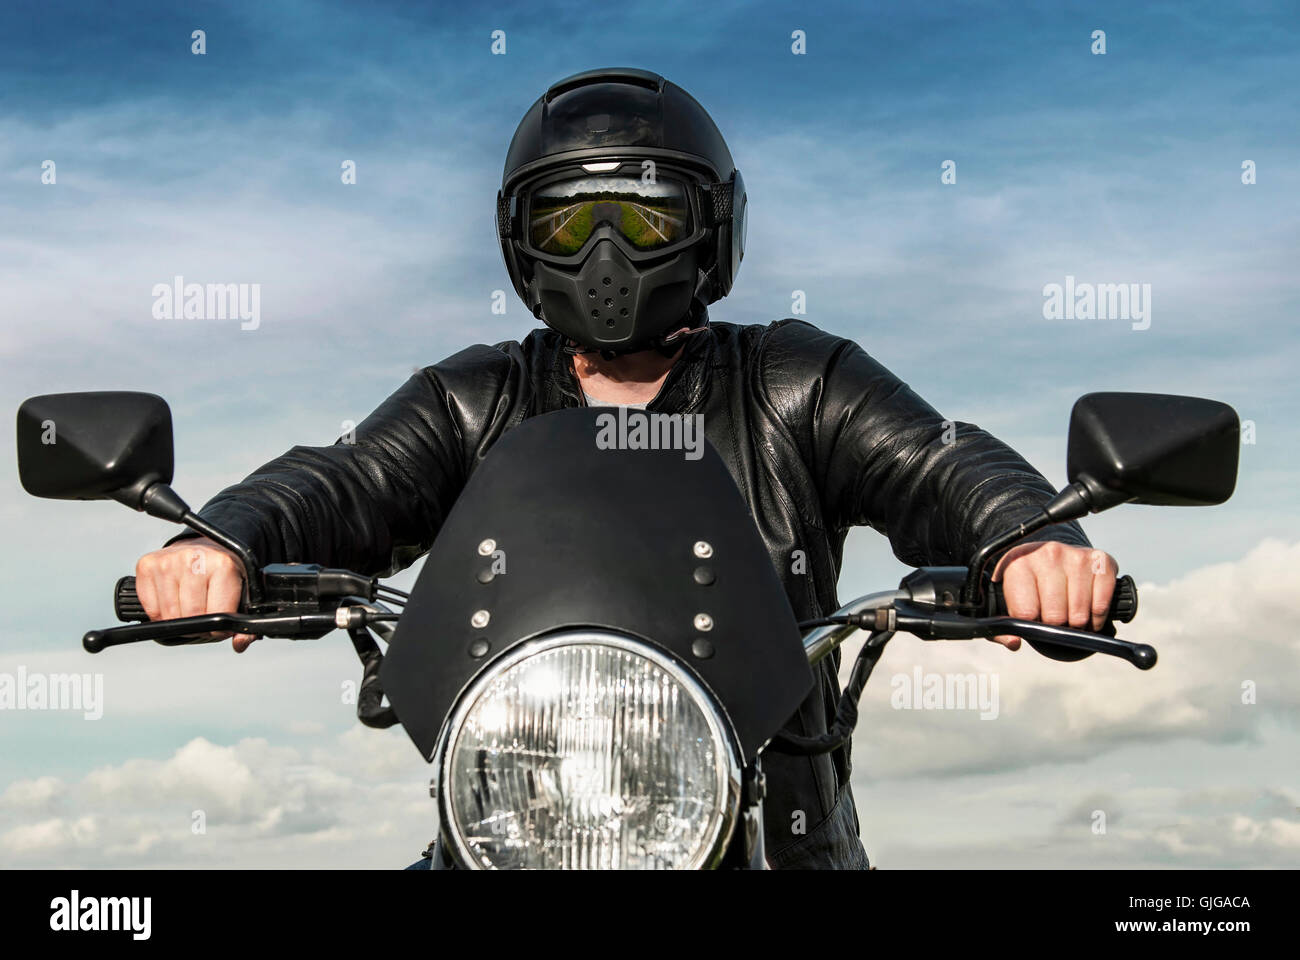 Motorradfahrer auf einem Motorrad mit schwarzen Helm Spiegelbild der Landschaft im Visier Leder Jacke blauer Himmel weiße Wolken Konzept Stockfoto